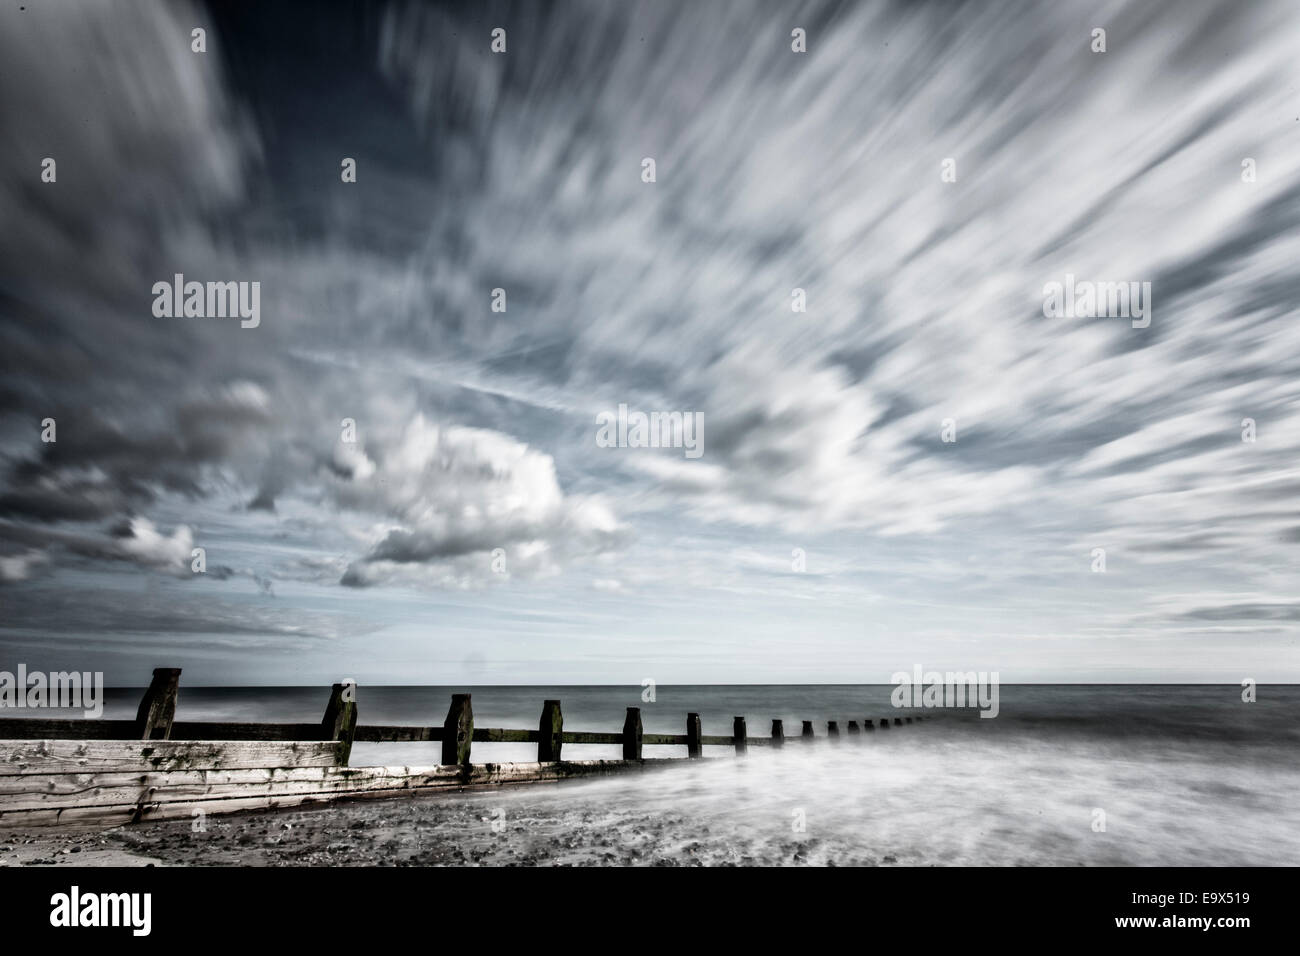 A long exposure photograph taken on Littlehampton Beach, West Sussex Stock Photo